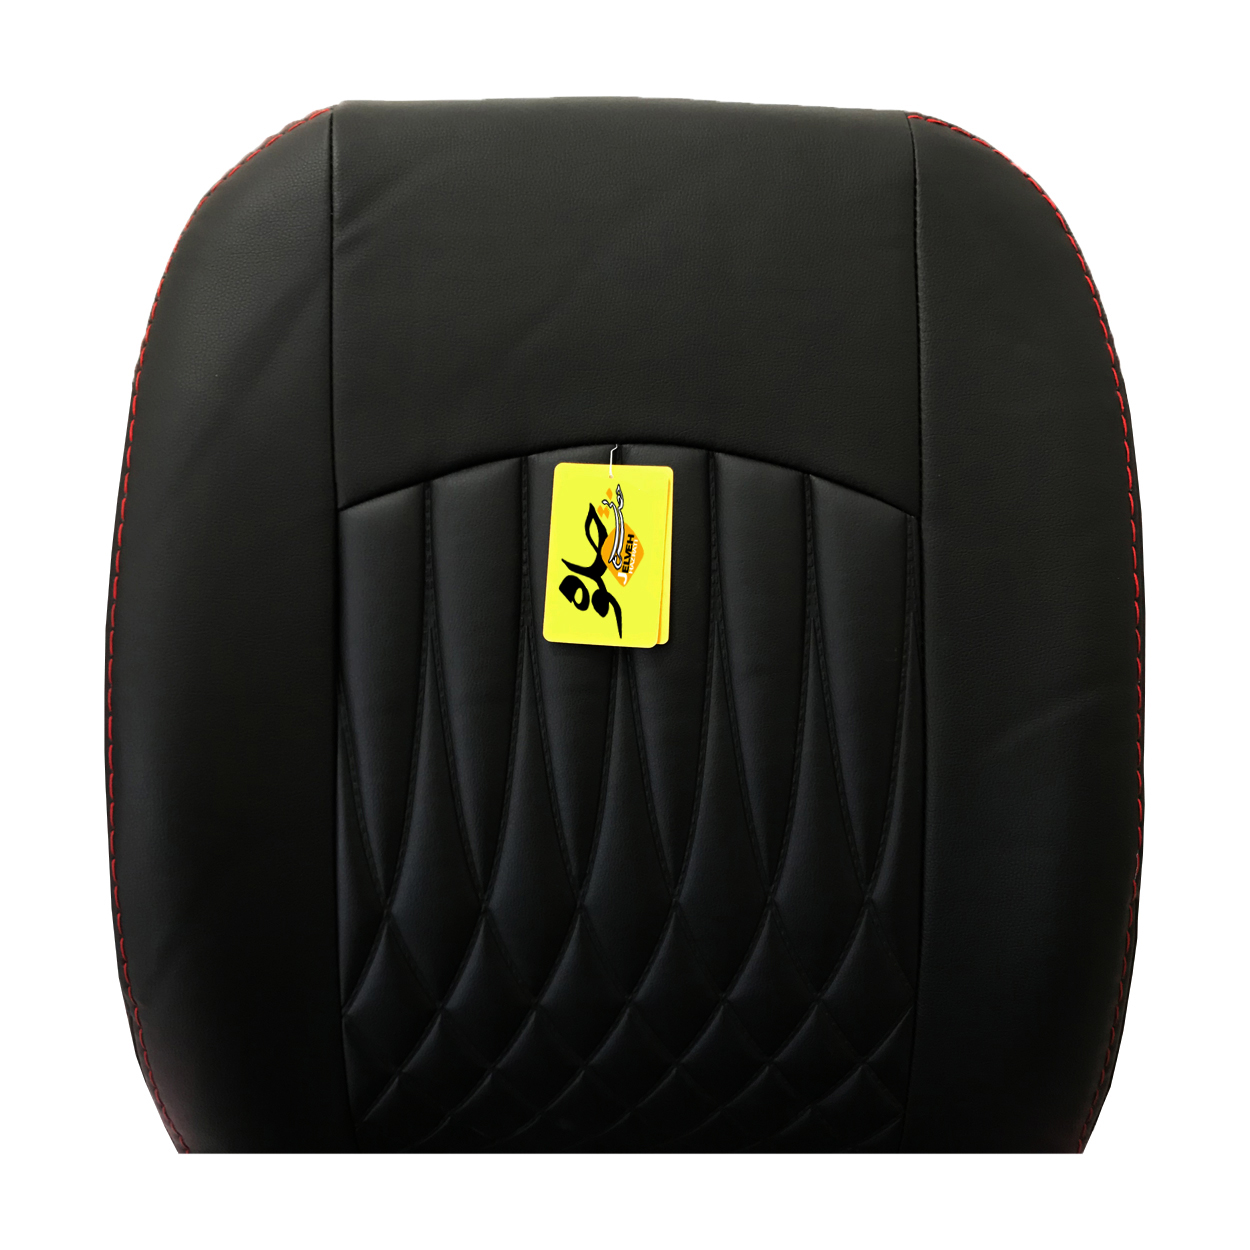 روکش صندلی خودرو جلوه مدل BG12 مناسب برای شاهین